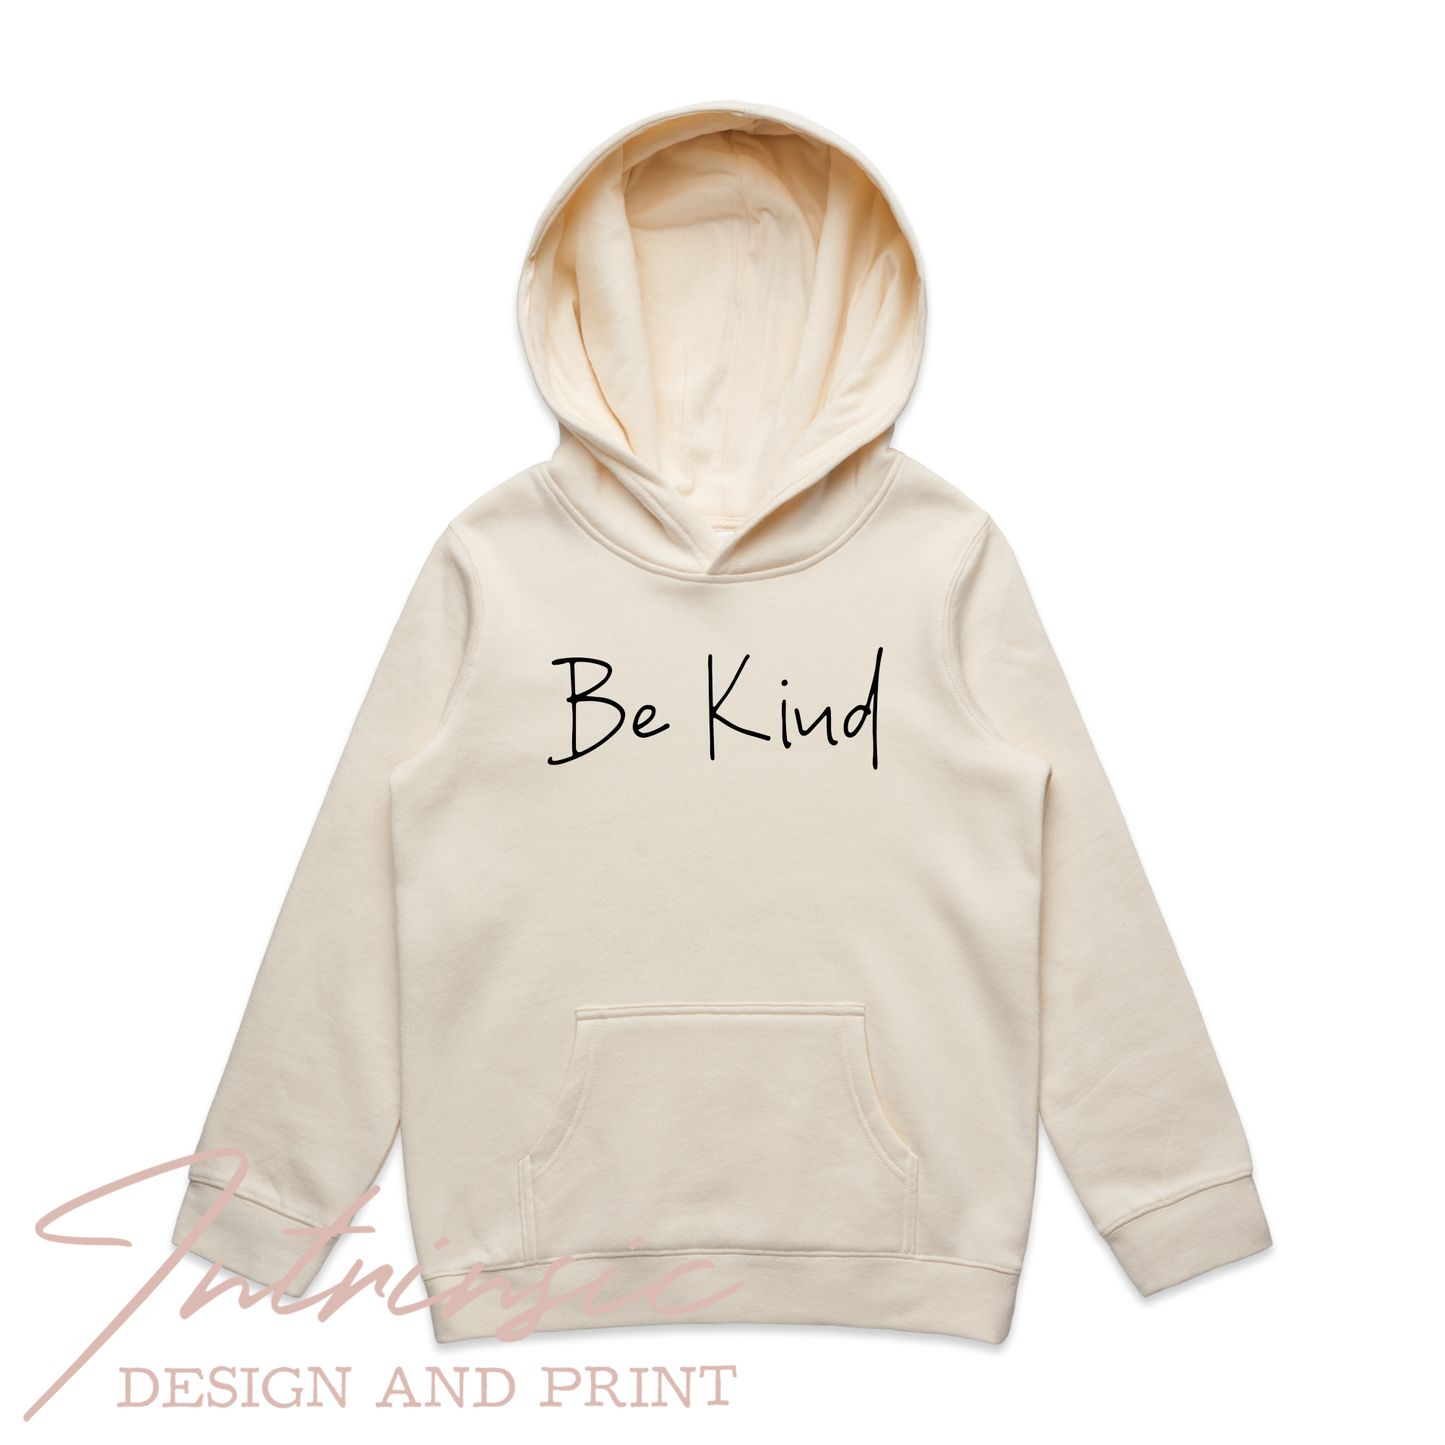 Be kind - Kids Hoodie